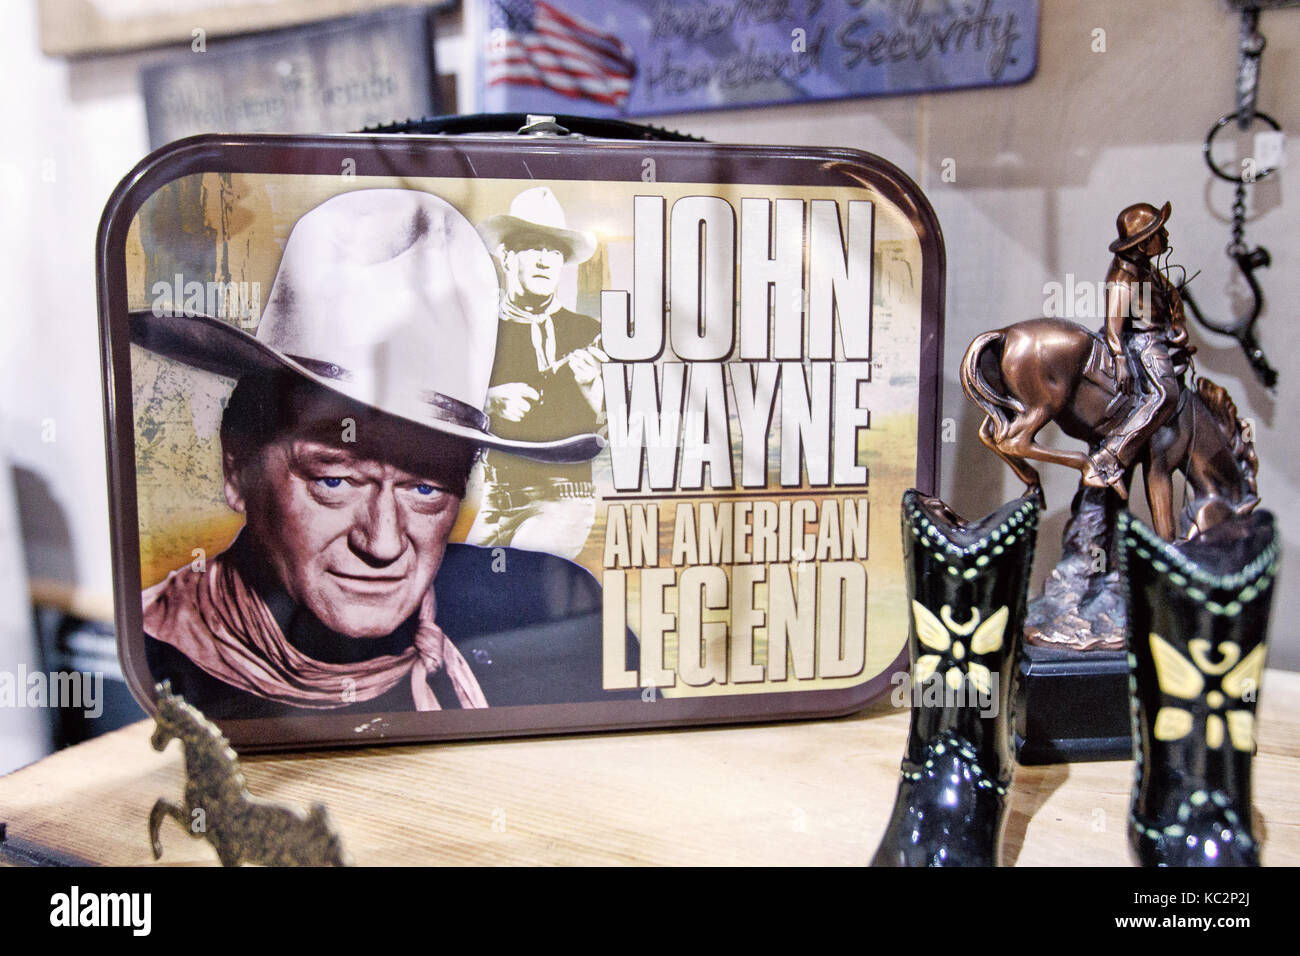 John Wayne themed Waren auf den Regalen der einen Store in Manhattan angezeigt. Stockfoto